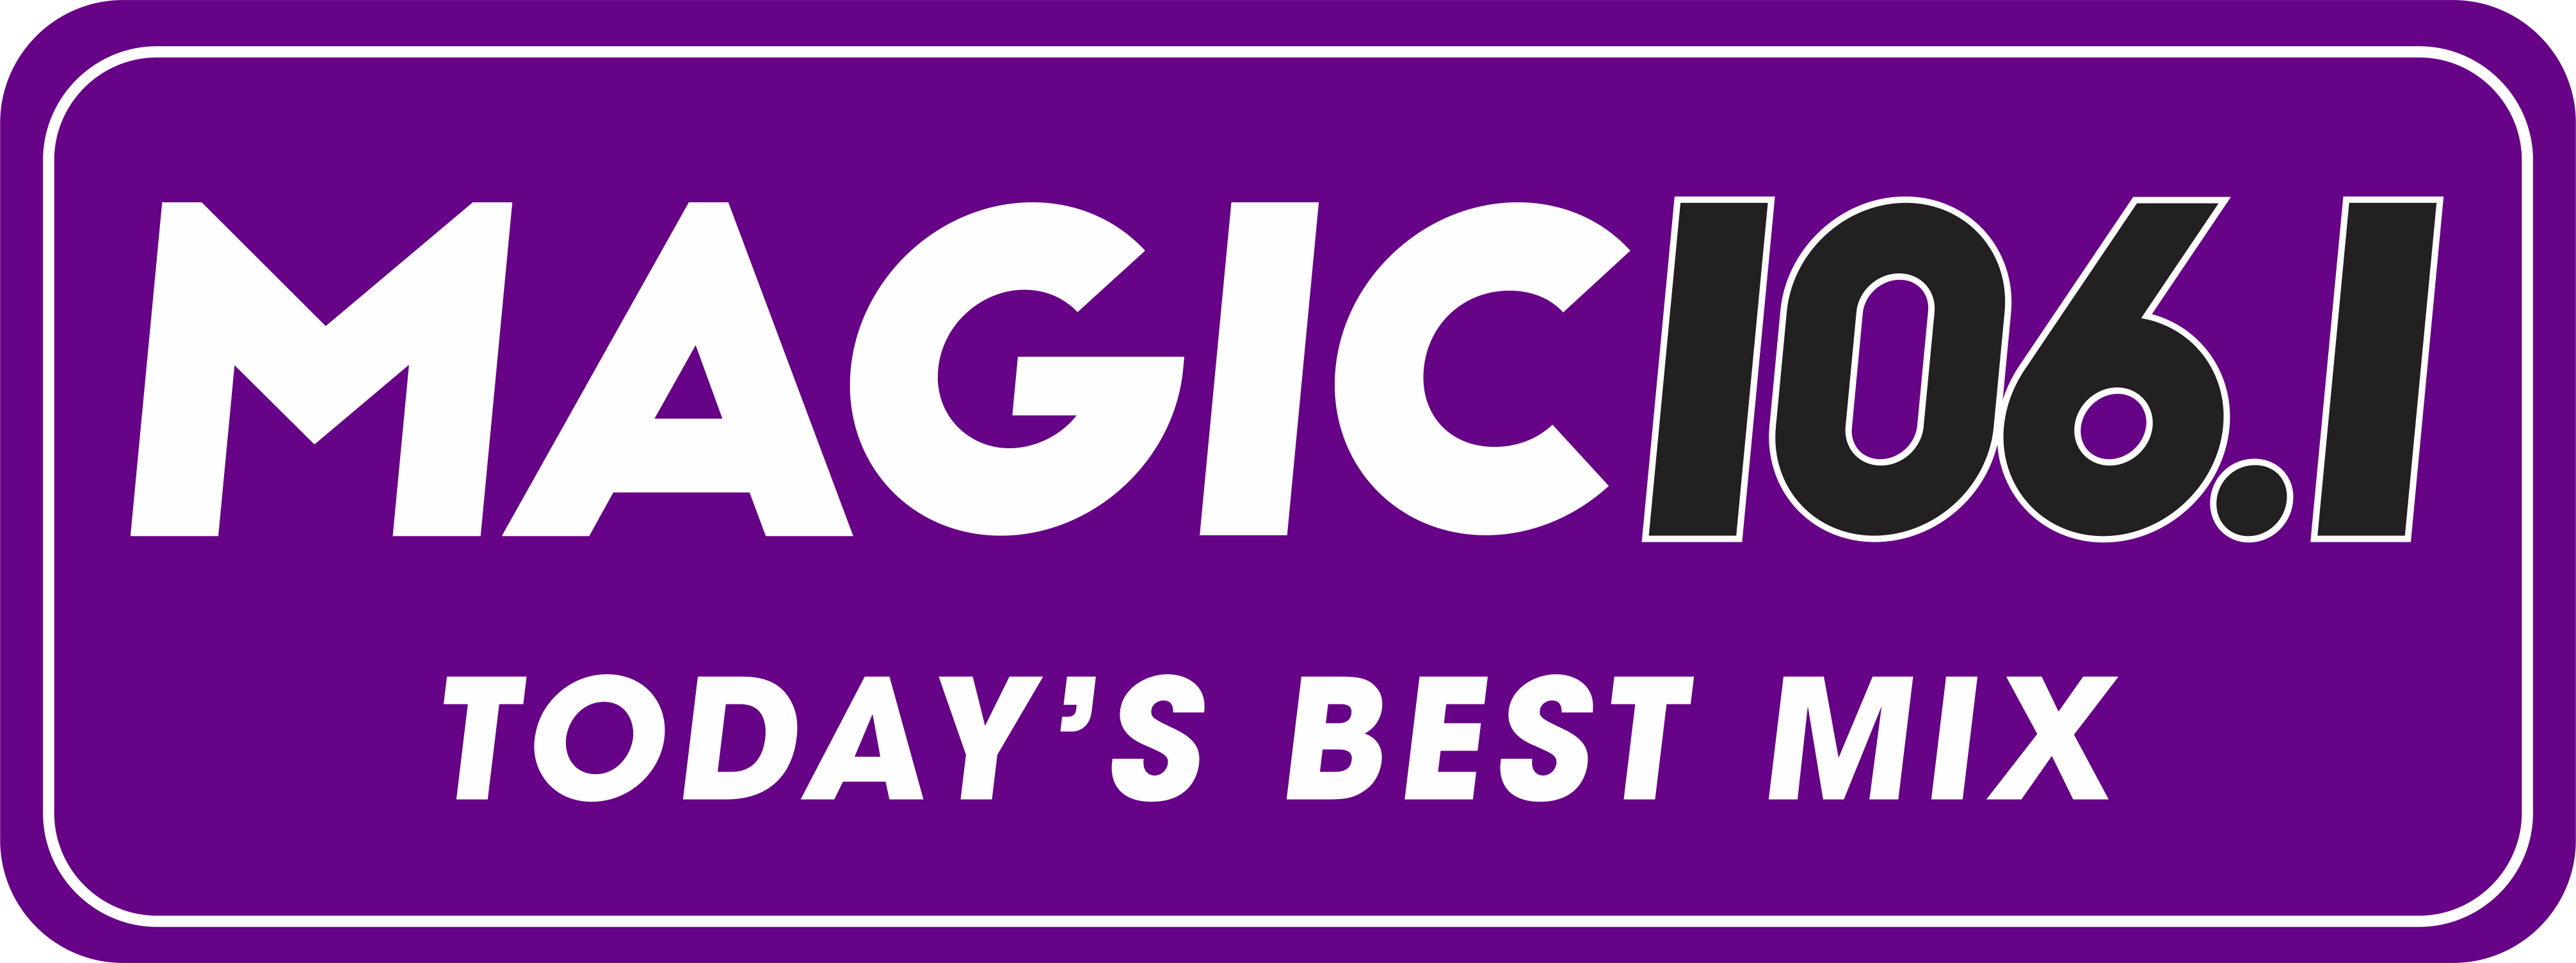 Magic 106 - August 2016